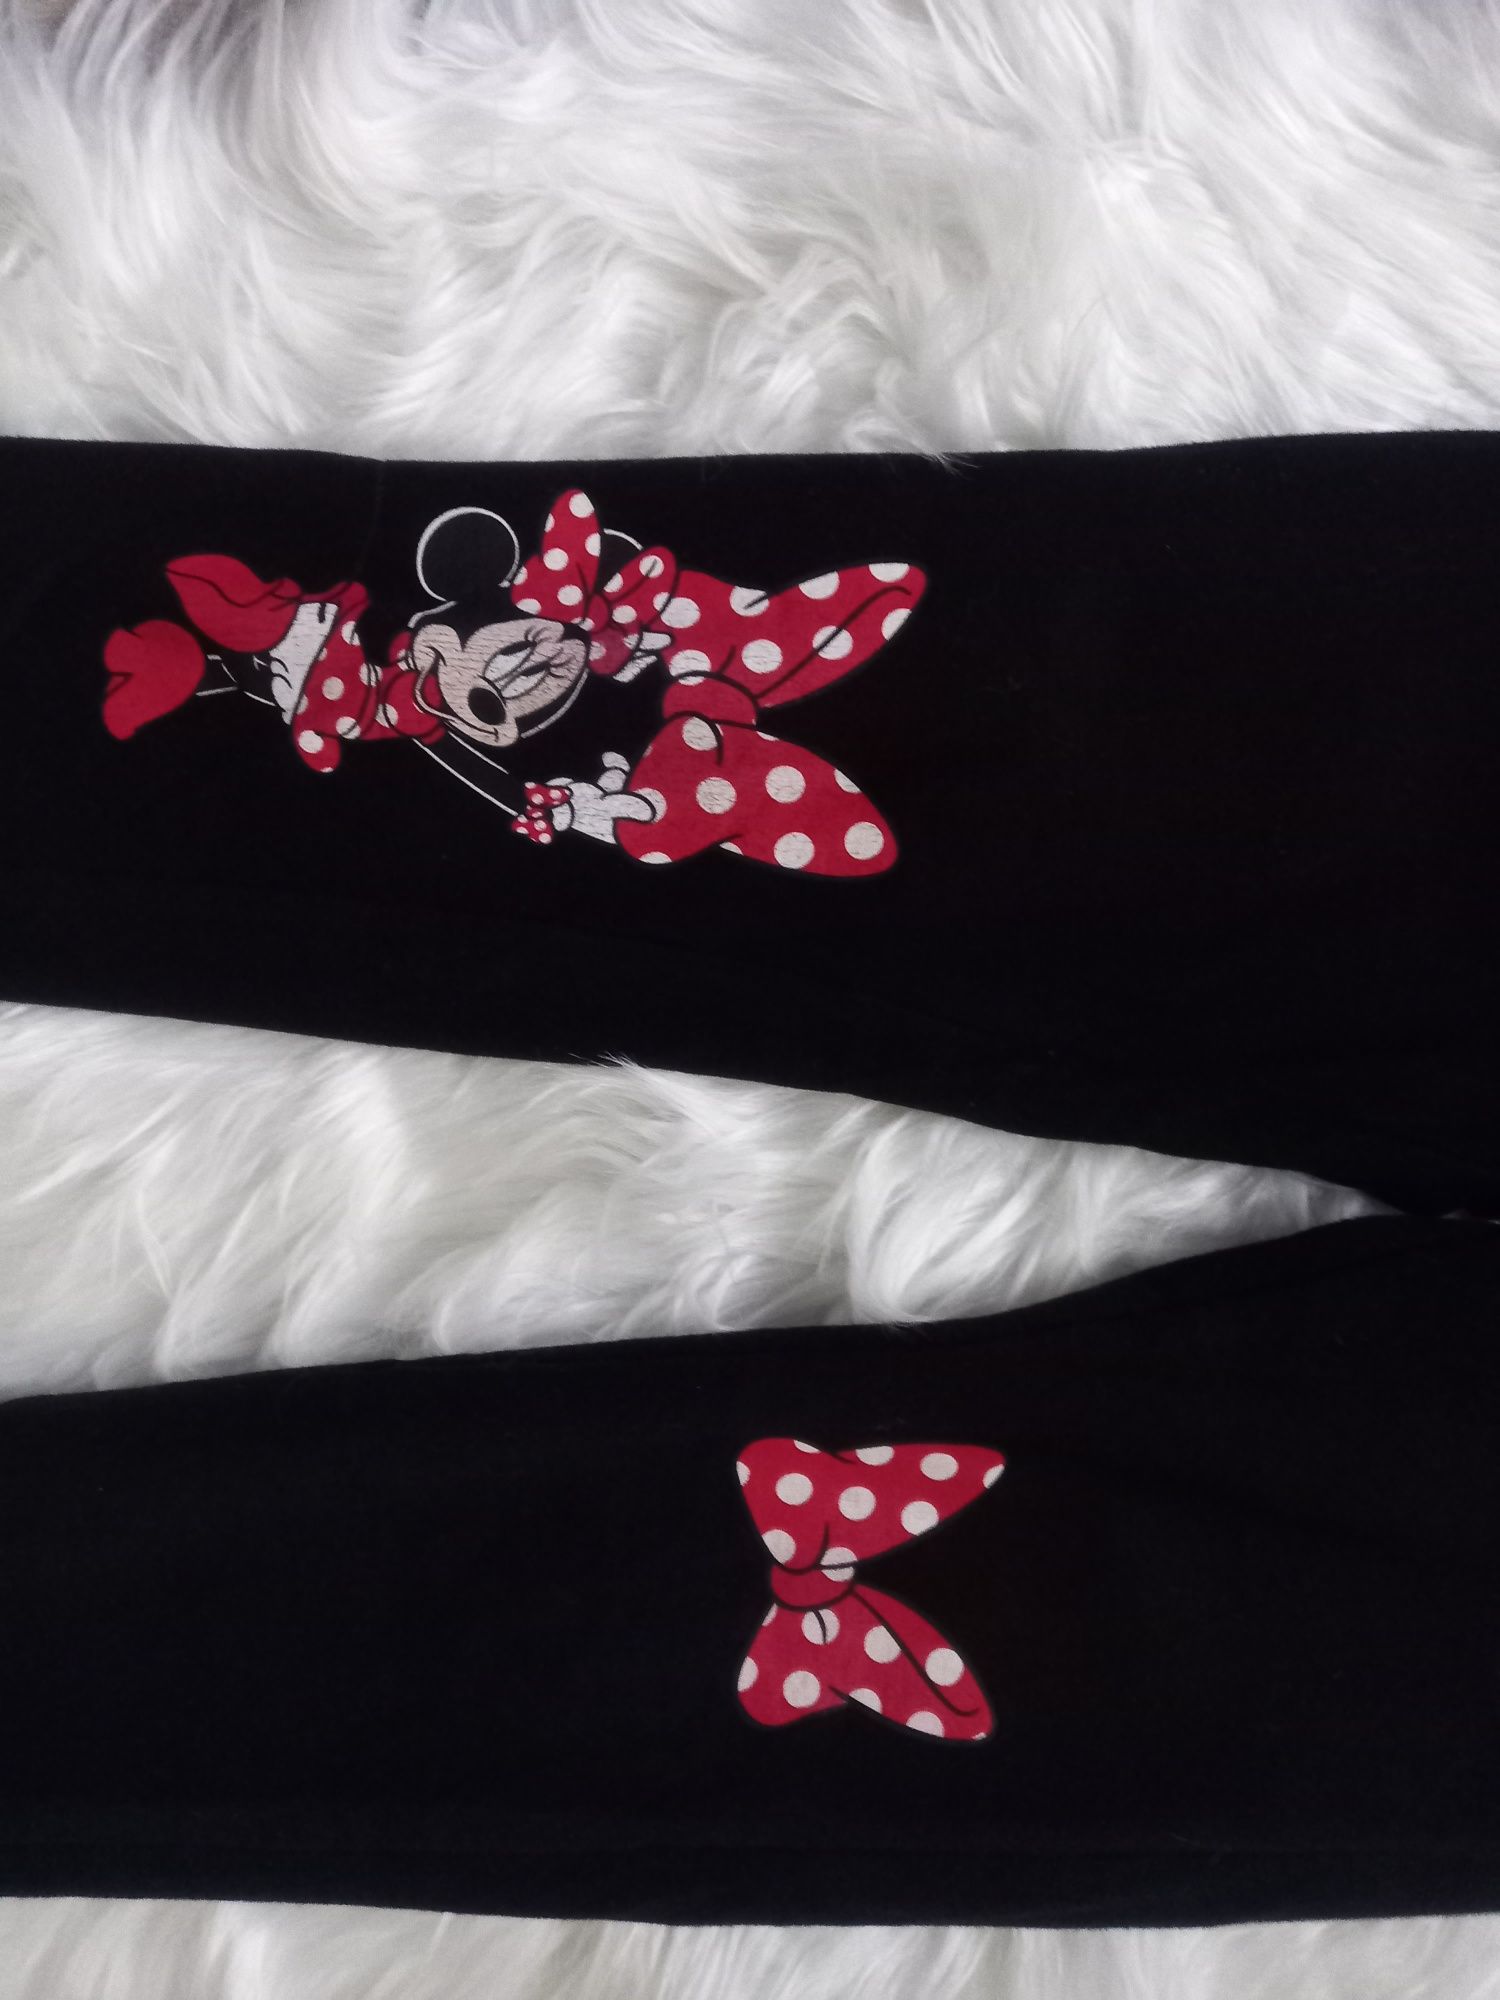 Spodnie dresowe Myszka Micky Disney 128 cm